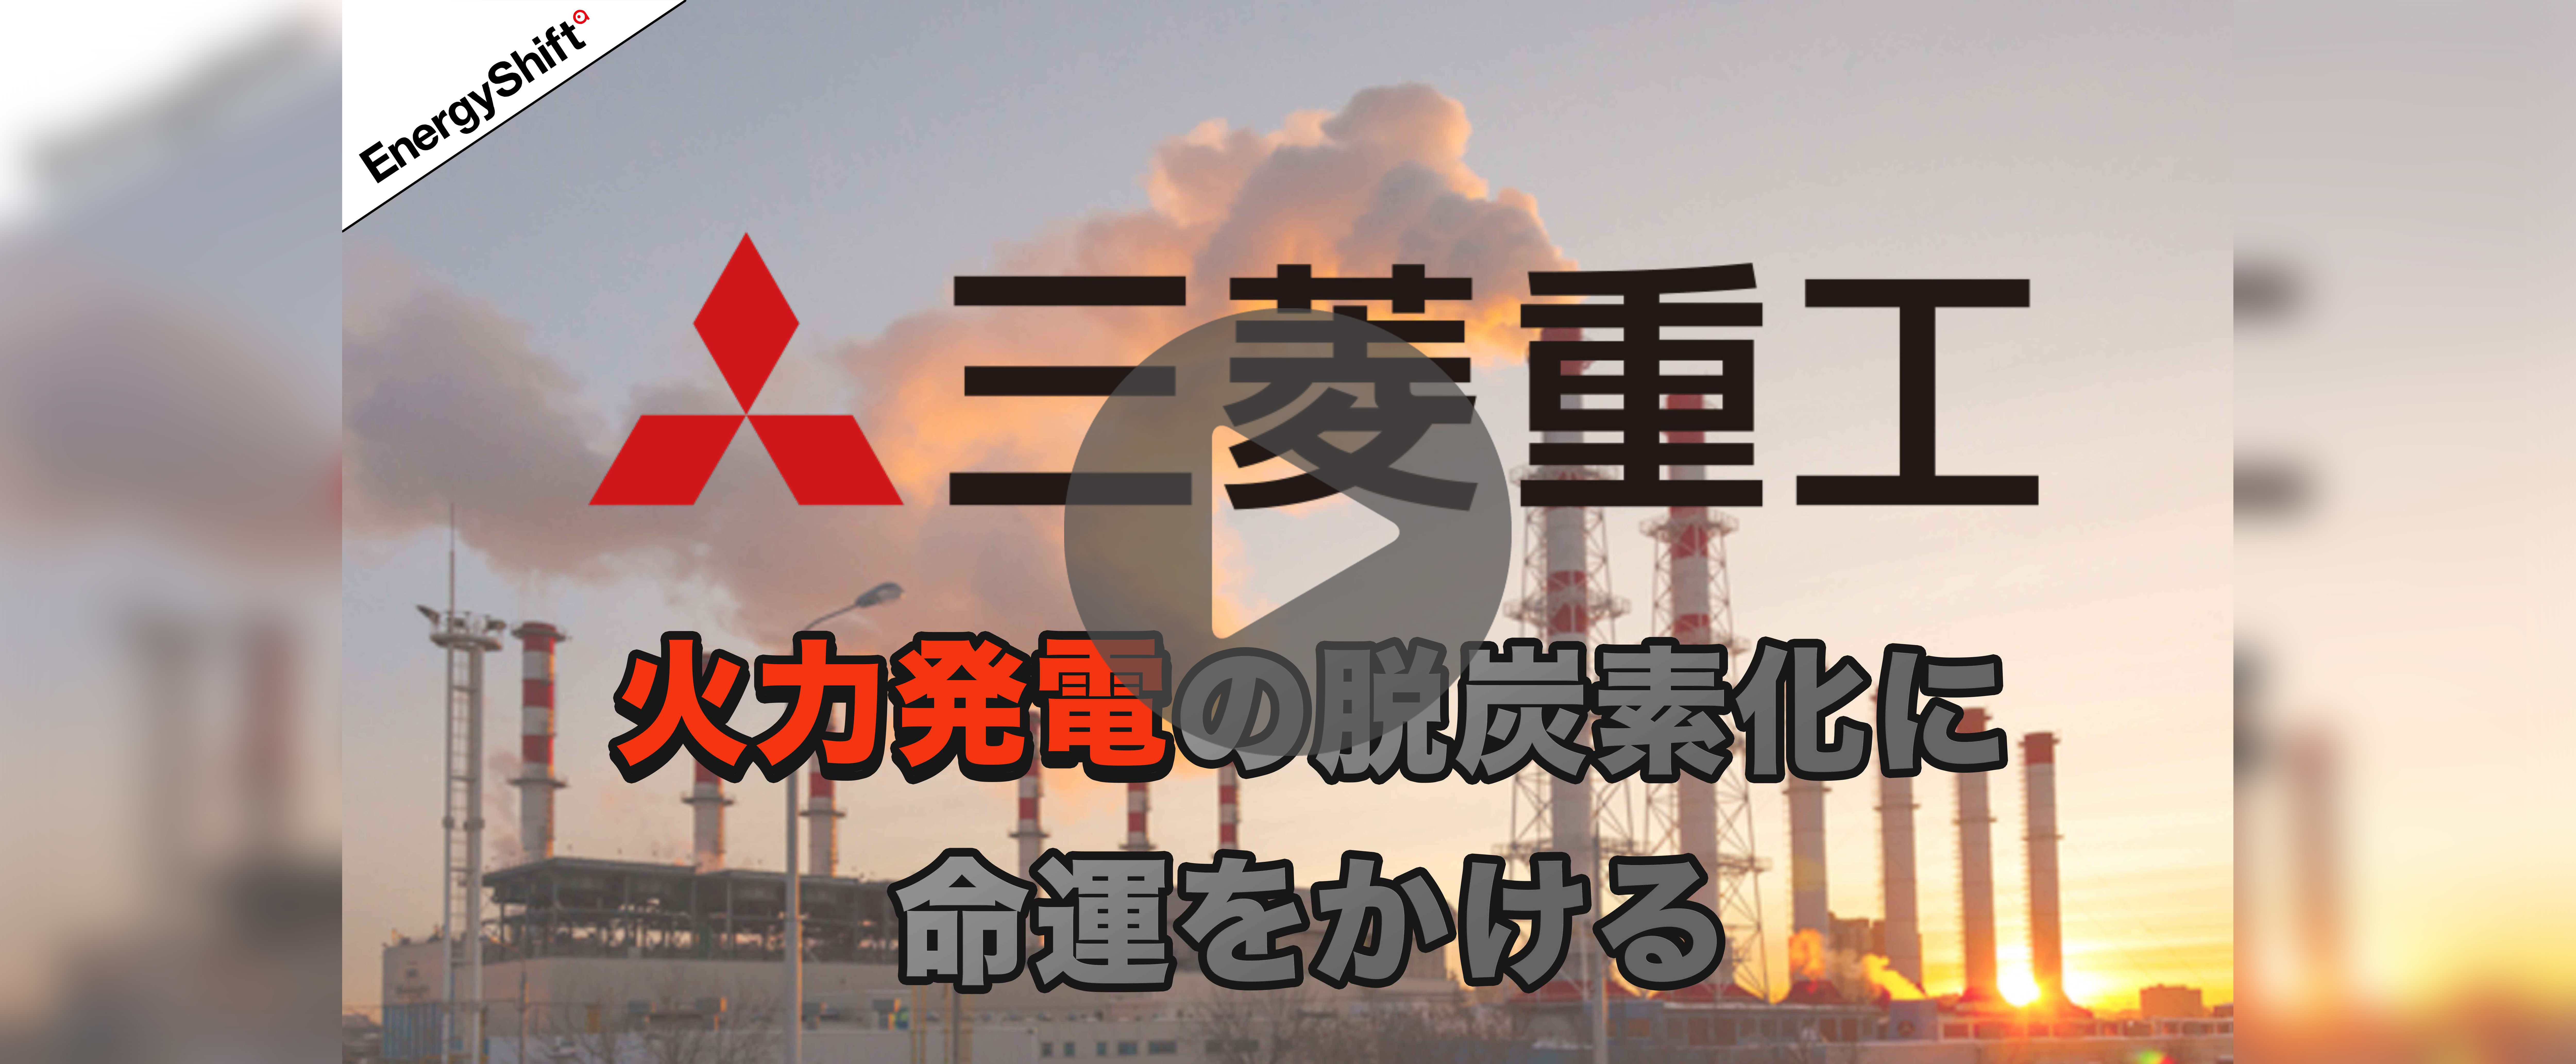 【YouTube】三菱重工 火力発電所の脱炭素化